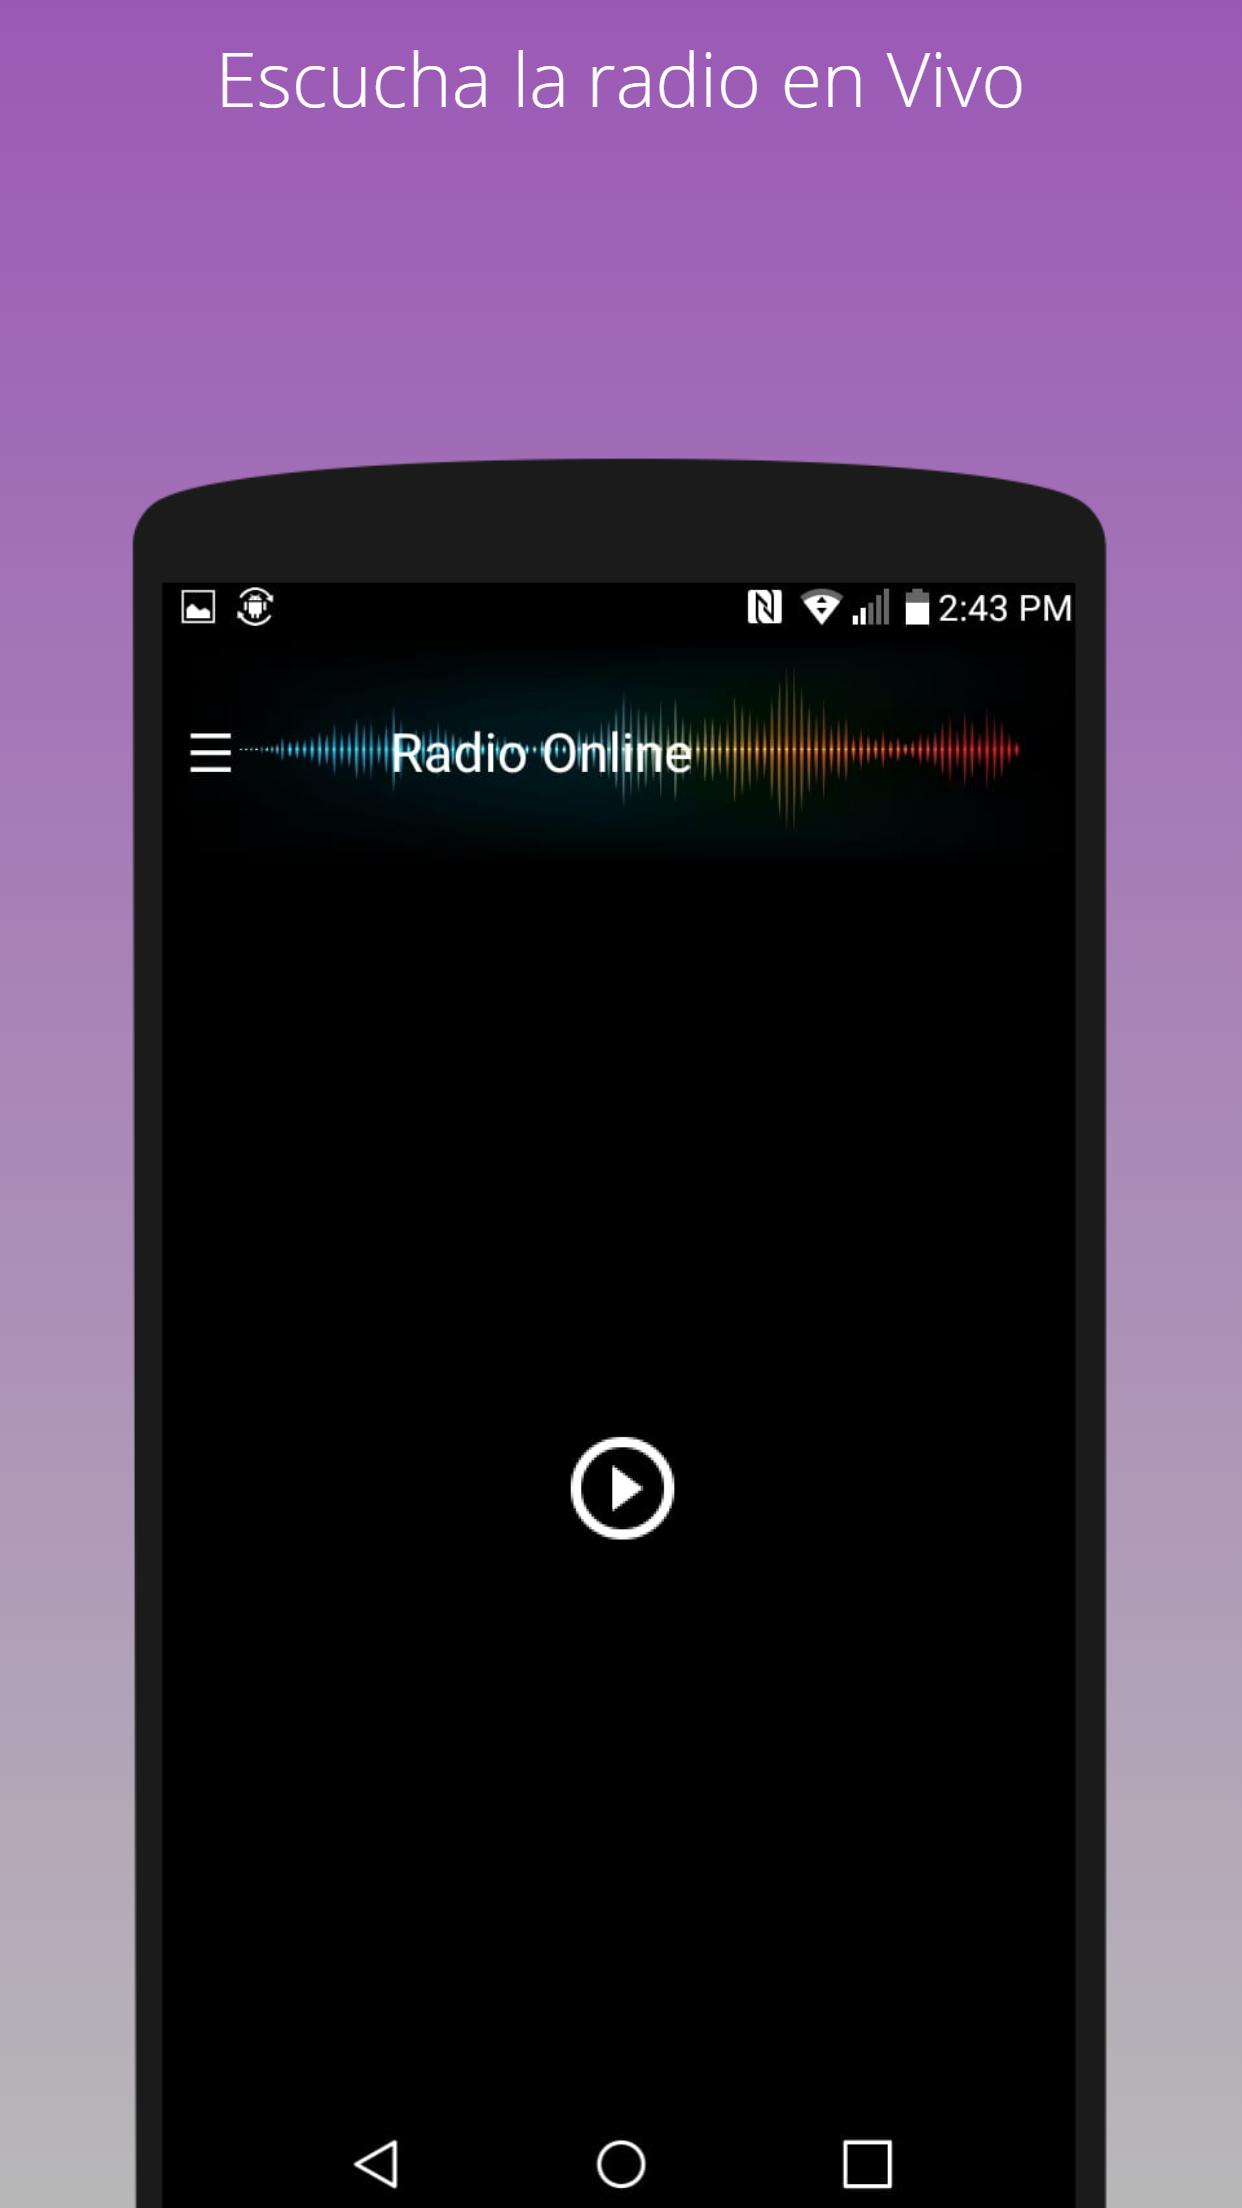 Radio Z101 en vivo - Emisora dominicana for Android - APK Download